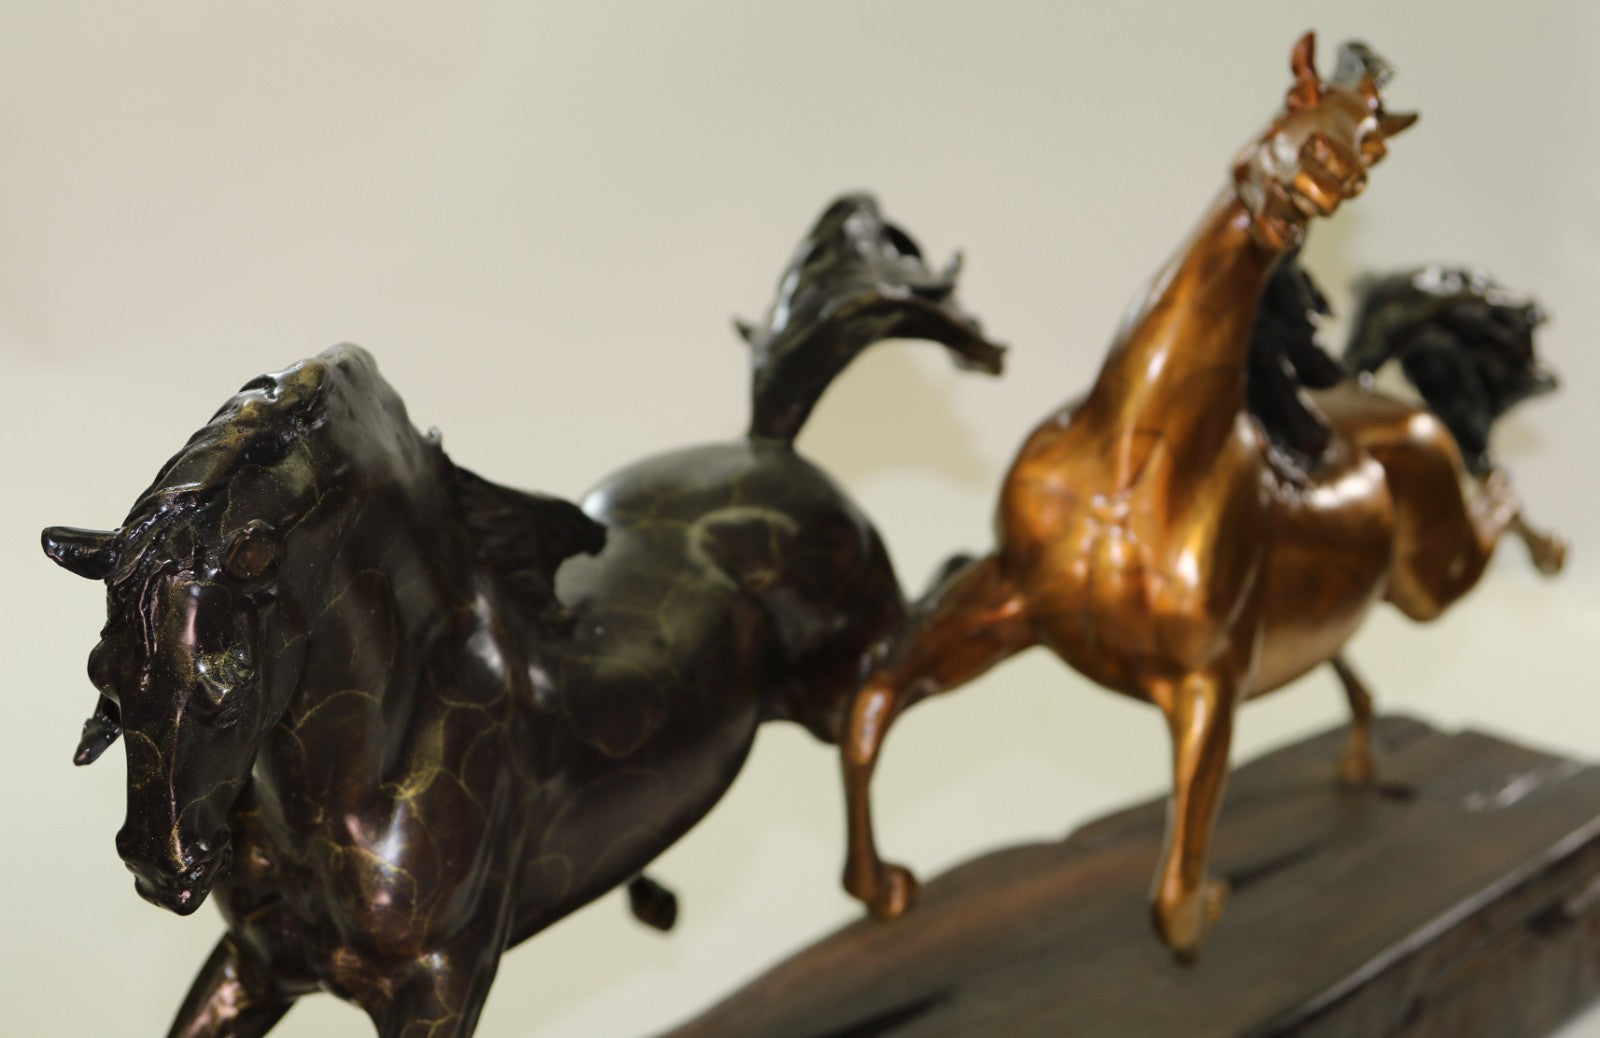 LTD EDT Original Two Wild Stallion Racing Horse Bronze Trophy Figurine Statue